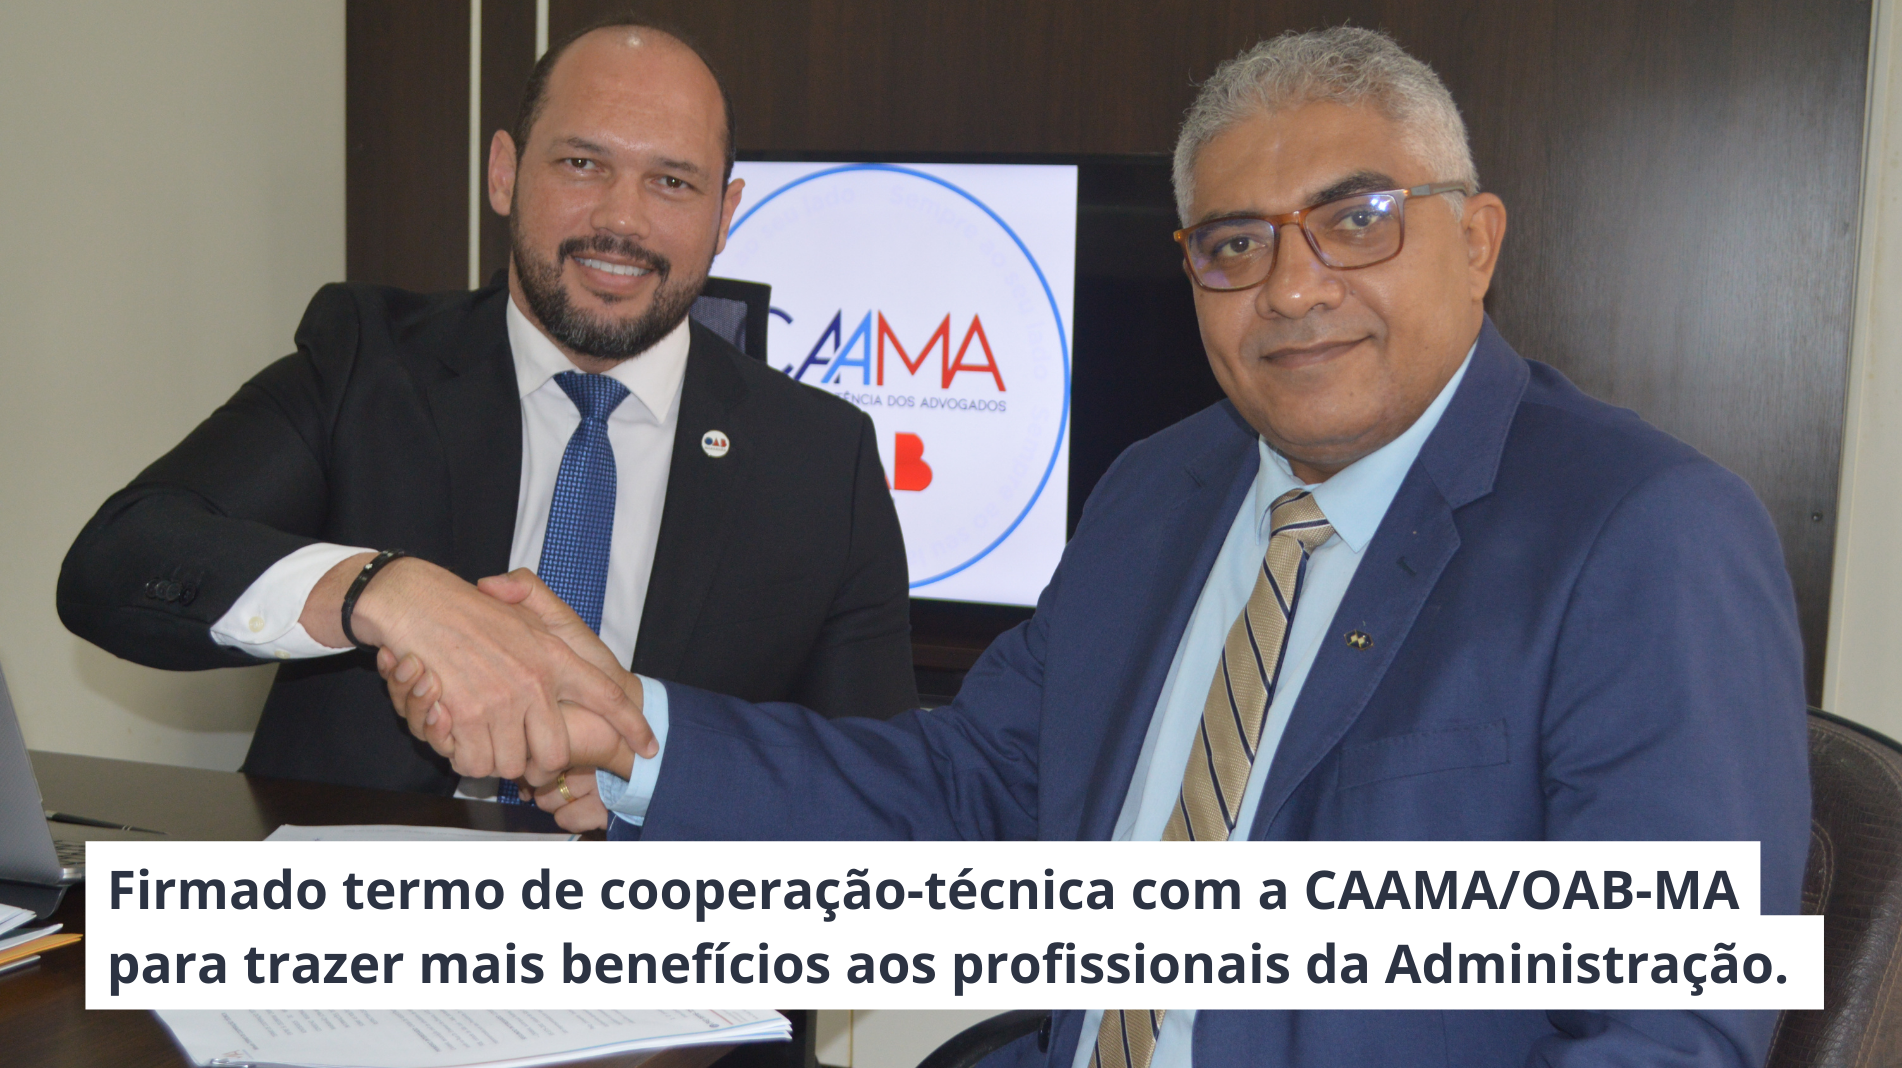 You are currently viewing Firmado termo de cooperação-técnica com a CAAMA/OAB-MA para trazer mais benefícios aos profissionais da Administração.